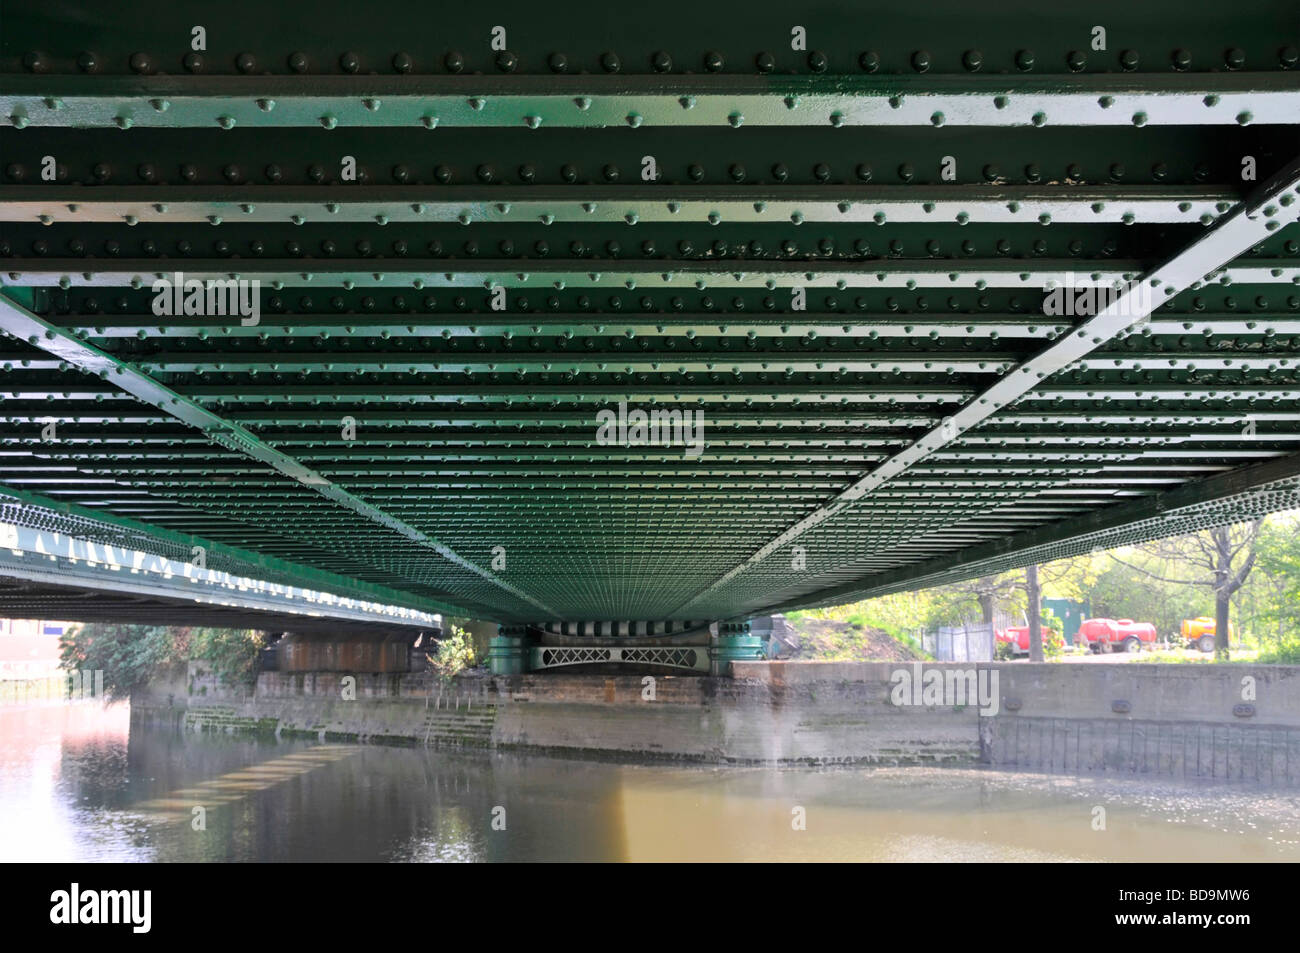 Lines of rivets in steel girders on underside of railway bridge over river Stock Photo